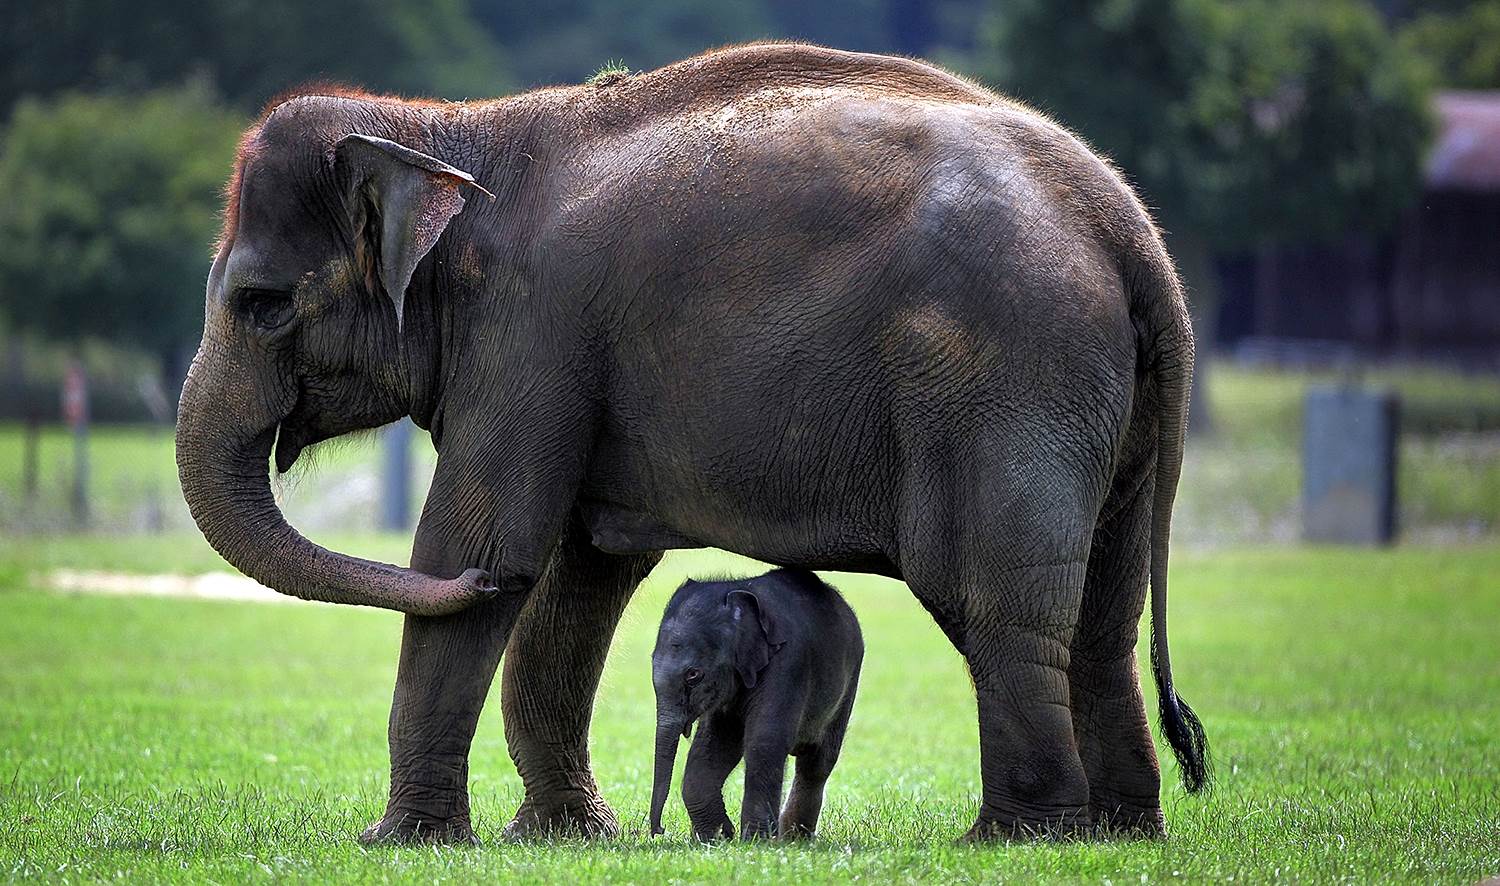 'Elephant mom me kaʻalo